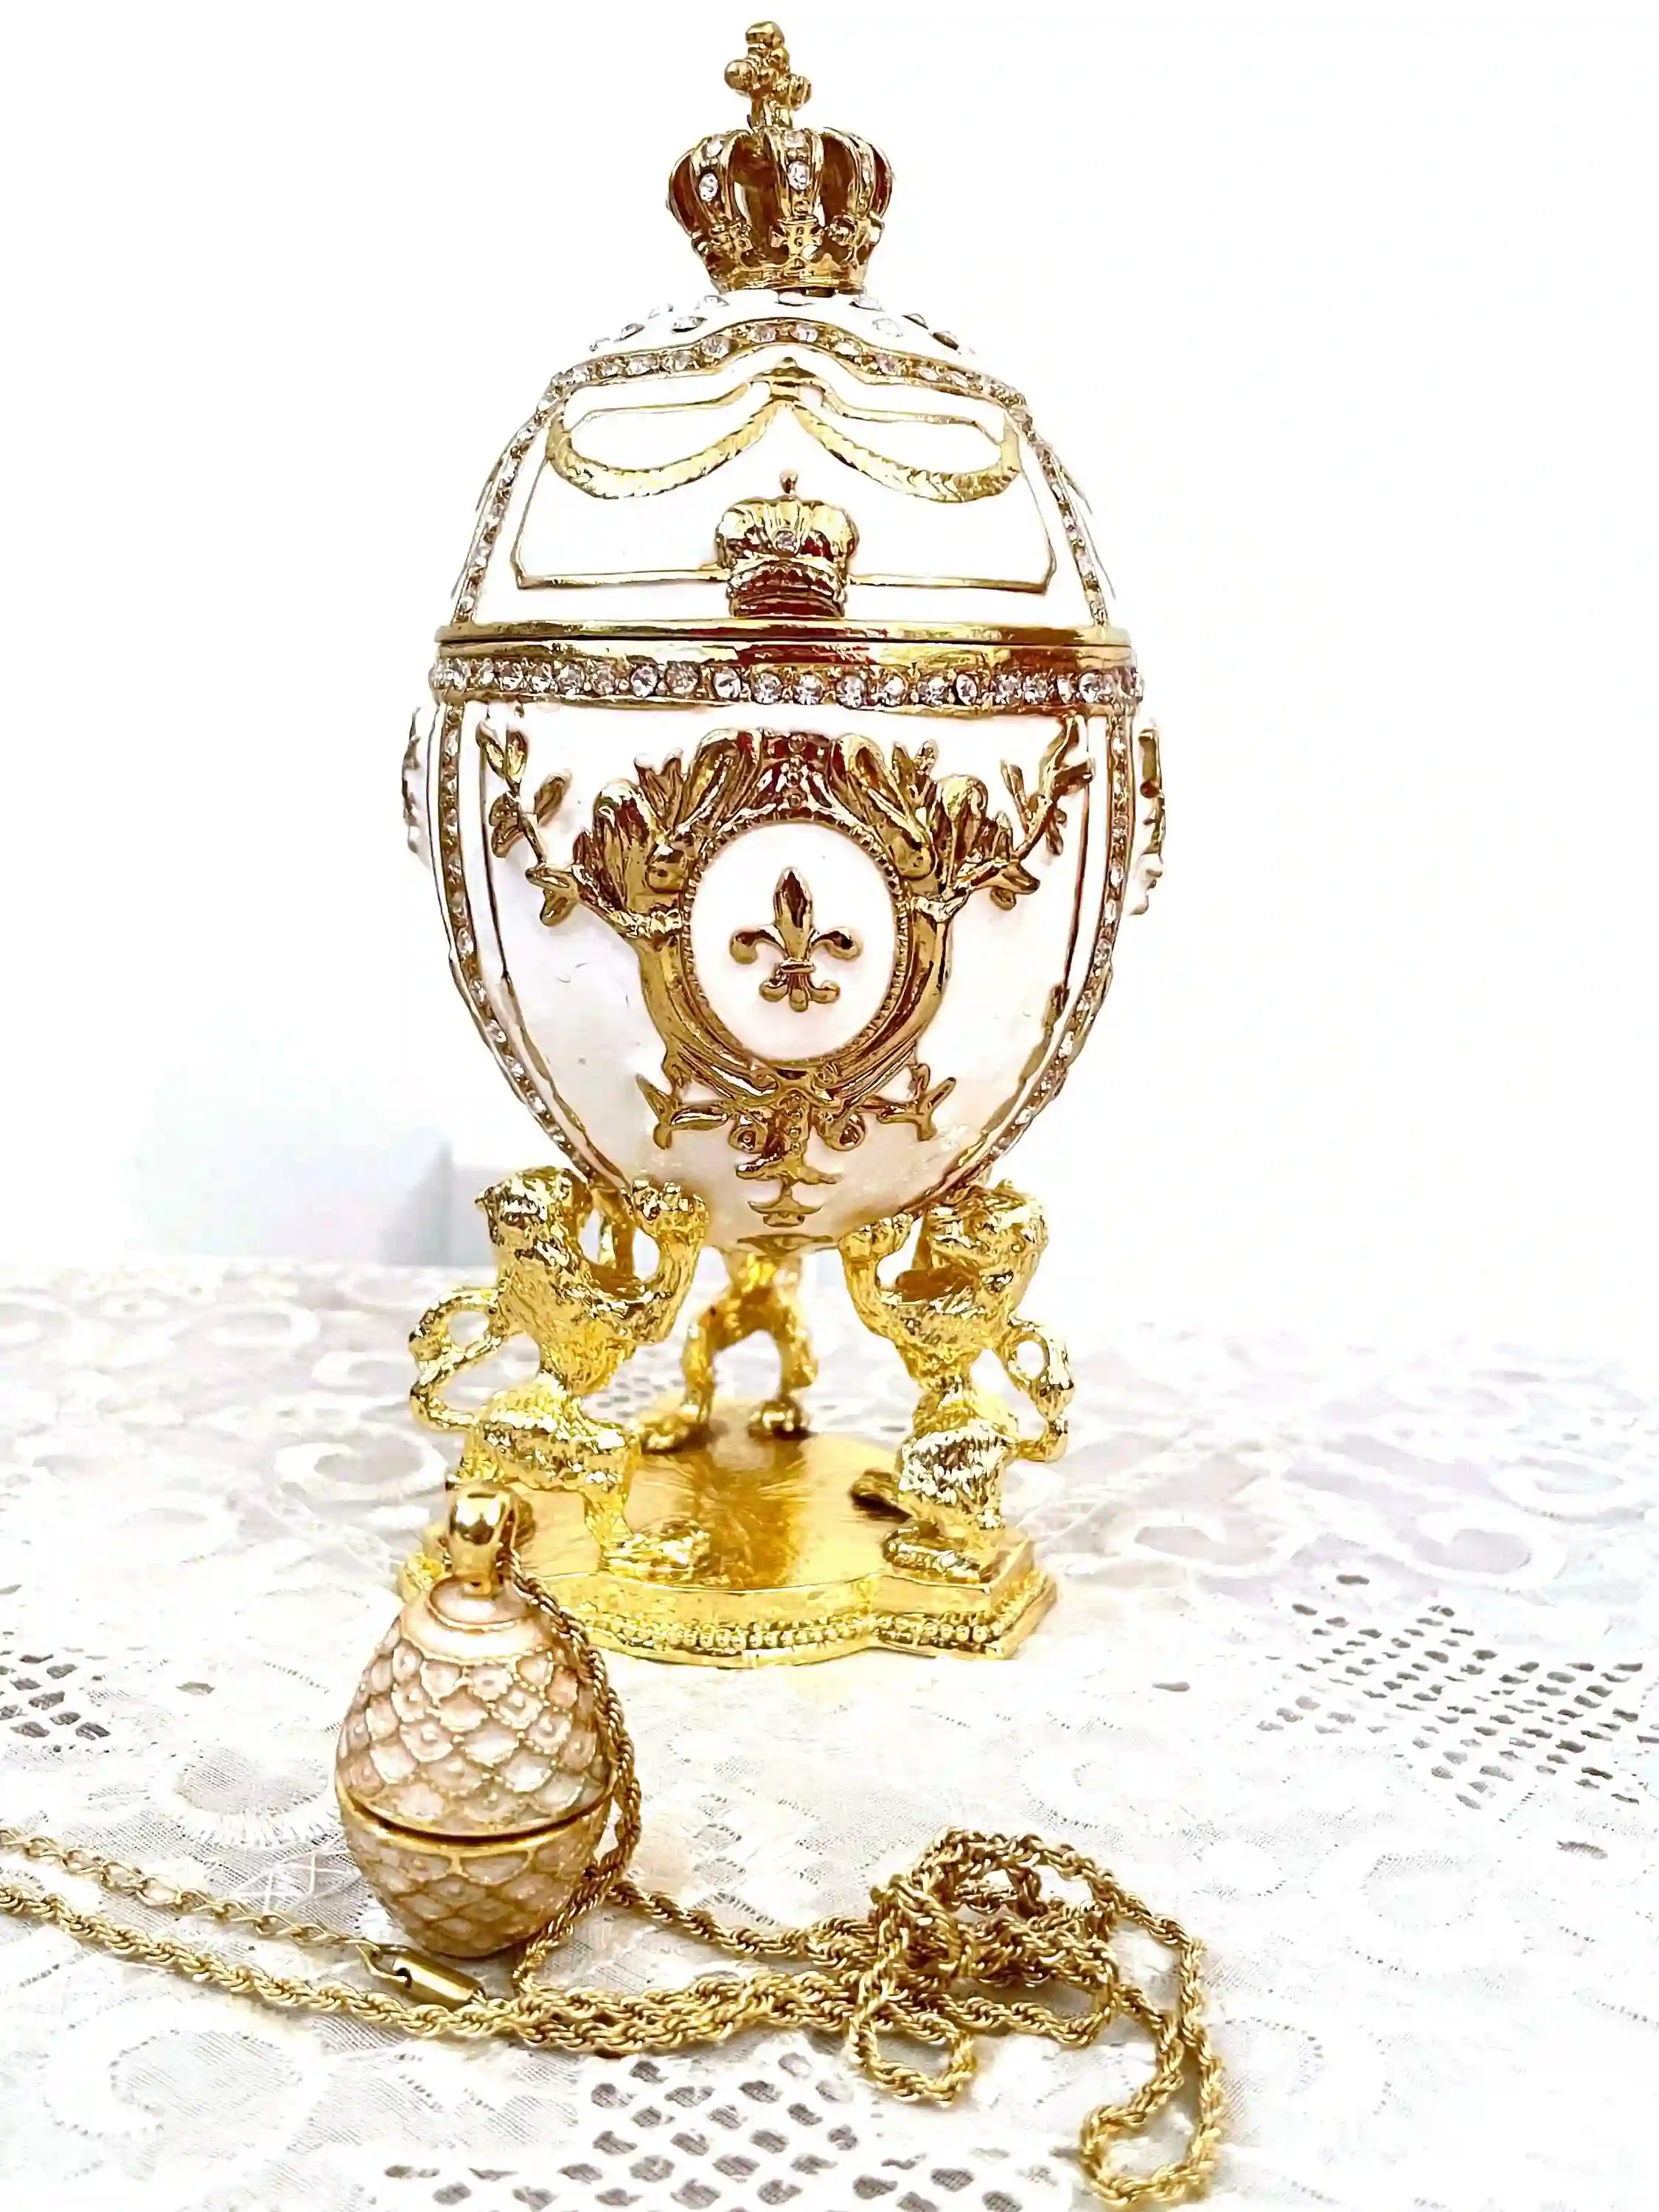 White Faberge egg - Imperial Lion Faberge style egg + Faberge Egg Pendant Necklace - White Gold trinket box - Swaroski Diamond HANDSET 24k 